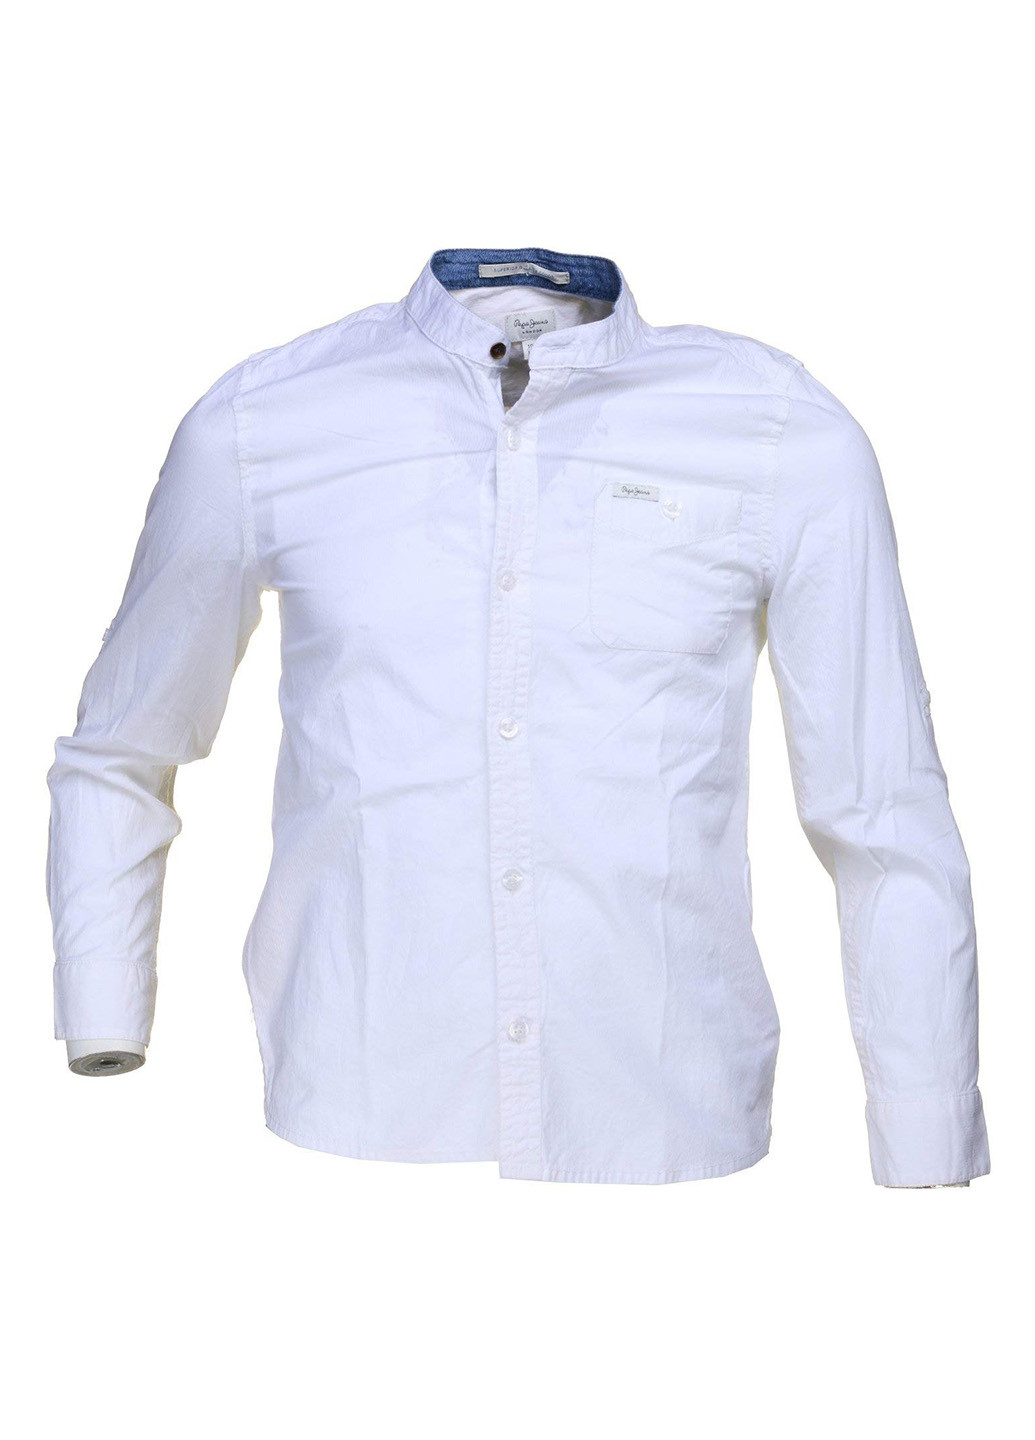 Белая классическая рубашка однотонная Pepe Jeans с длинным рукавом